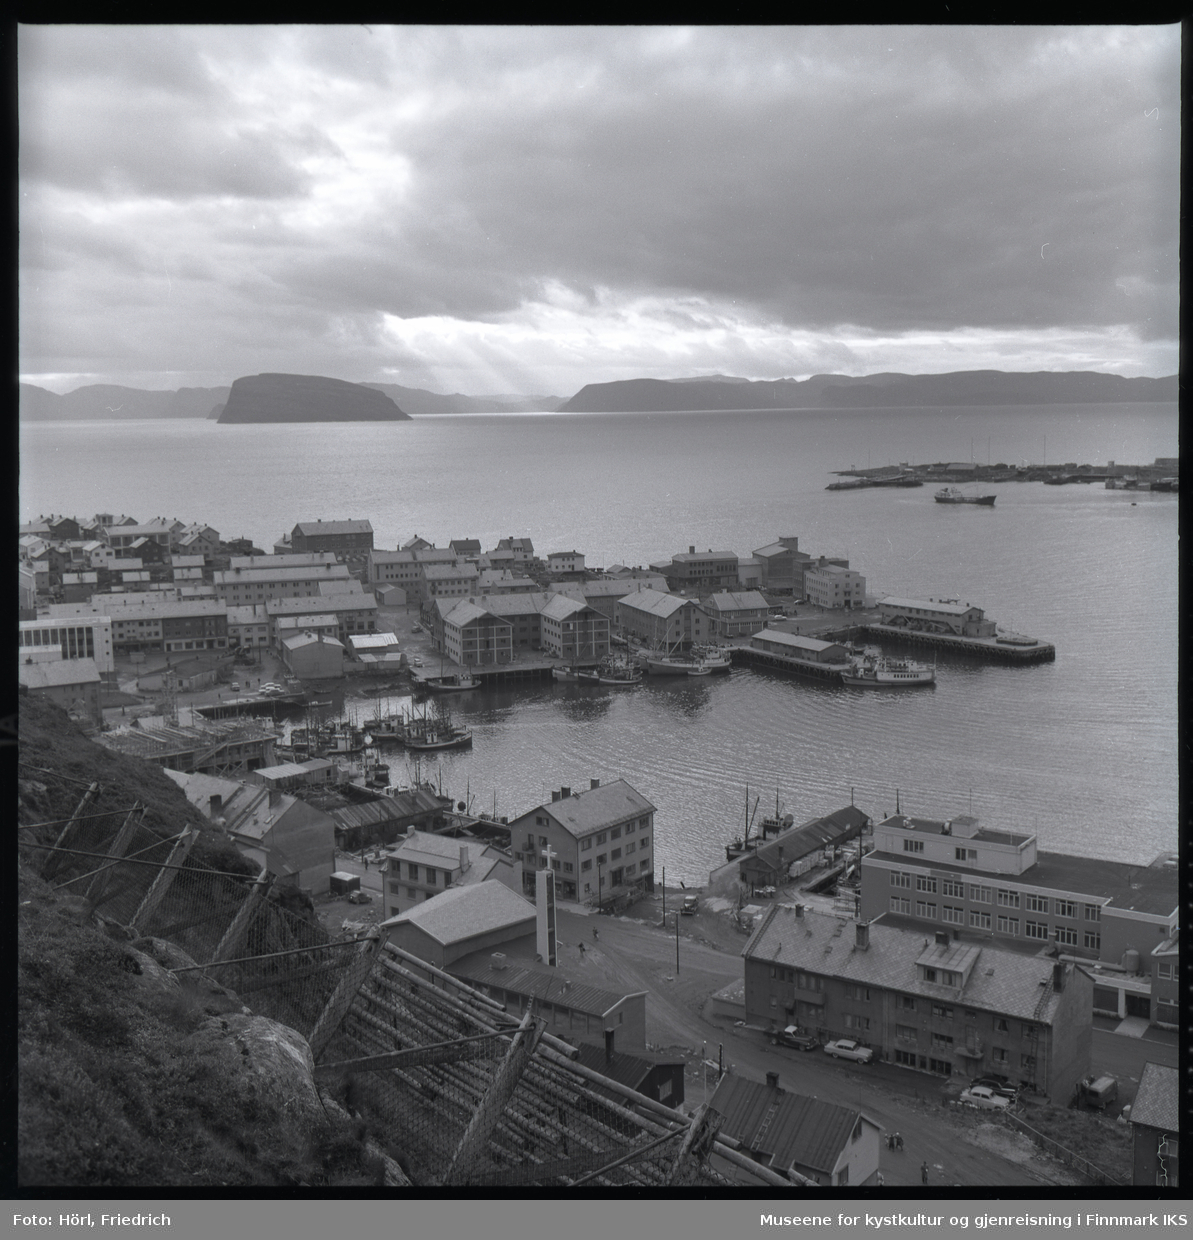 Utsikt over Hammerfest sentrum og havn fra Salenfjellet. I havna ligger ulike type båter. Man ser gjenreiste bygg, deriblant den katolske kirka St. Mikael, men også brakker og bygninger som er under oppføring. I fjellsiden i forgrunnen ser man gjerder til rassikring. Til høyre i bilde ser man spissen til Fuglenes. I bakgrunnen ser man Sørøysundet med øyene Håja og Hjelmen, samt silhuetten av Sørøya.